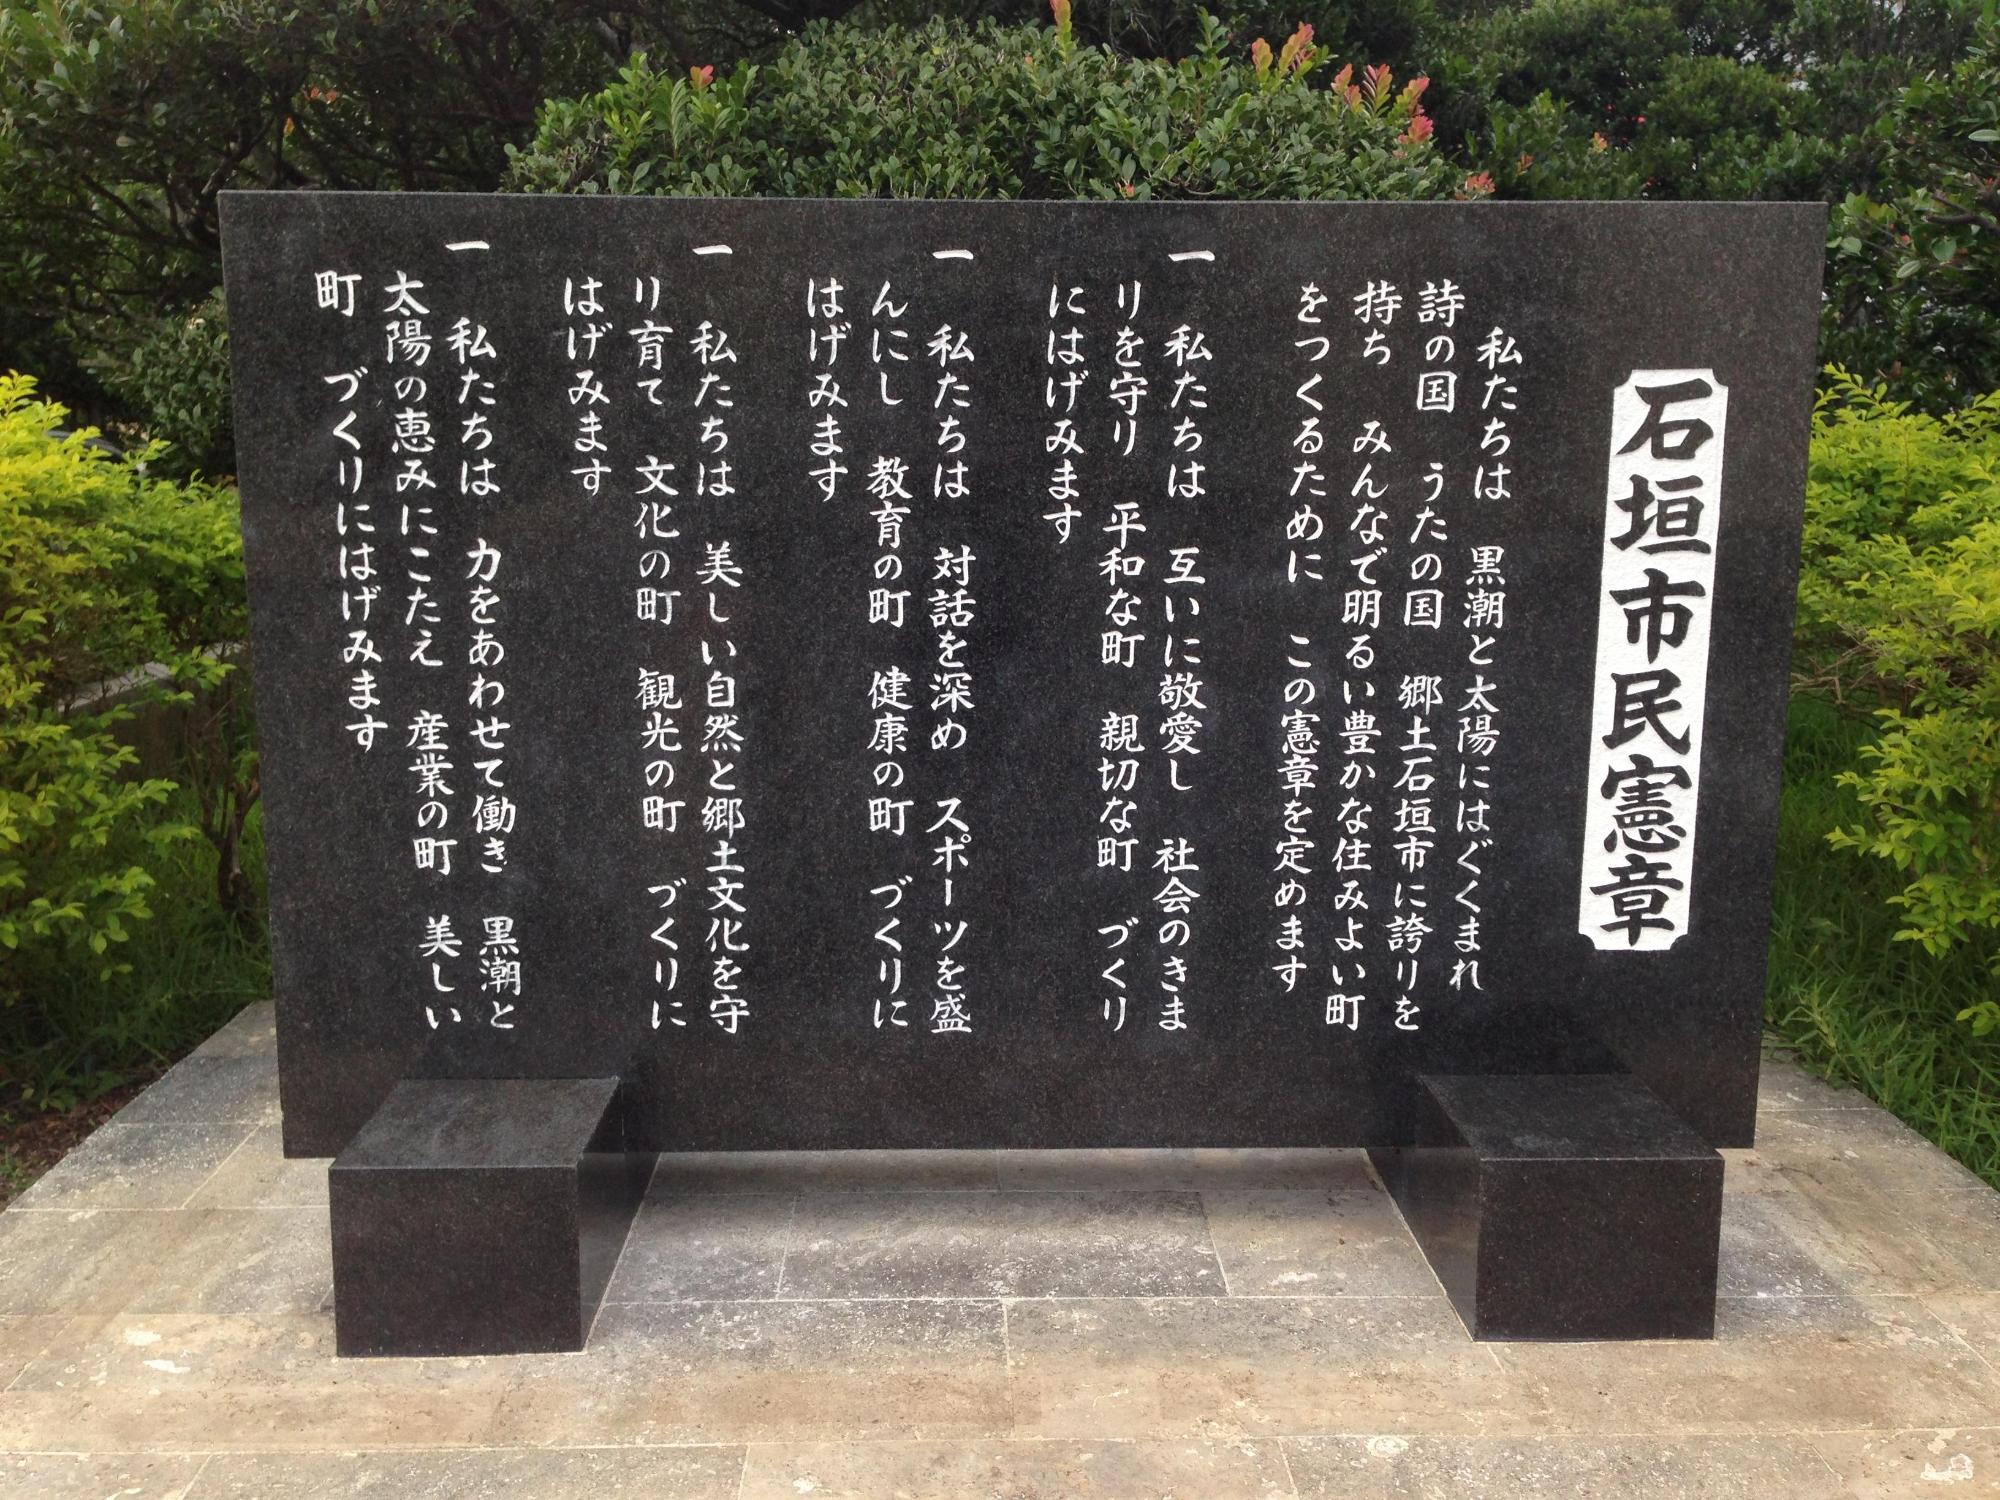 石垣市役所駐車場横に設置されている石垣市民憲章の碑